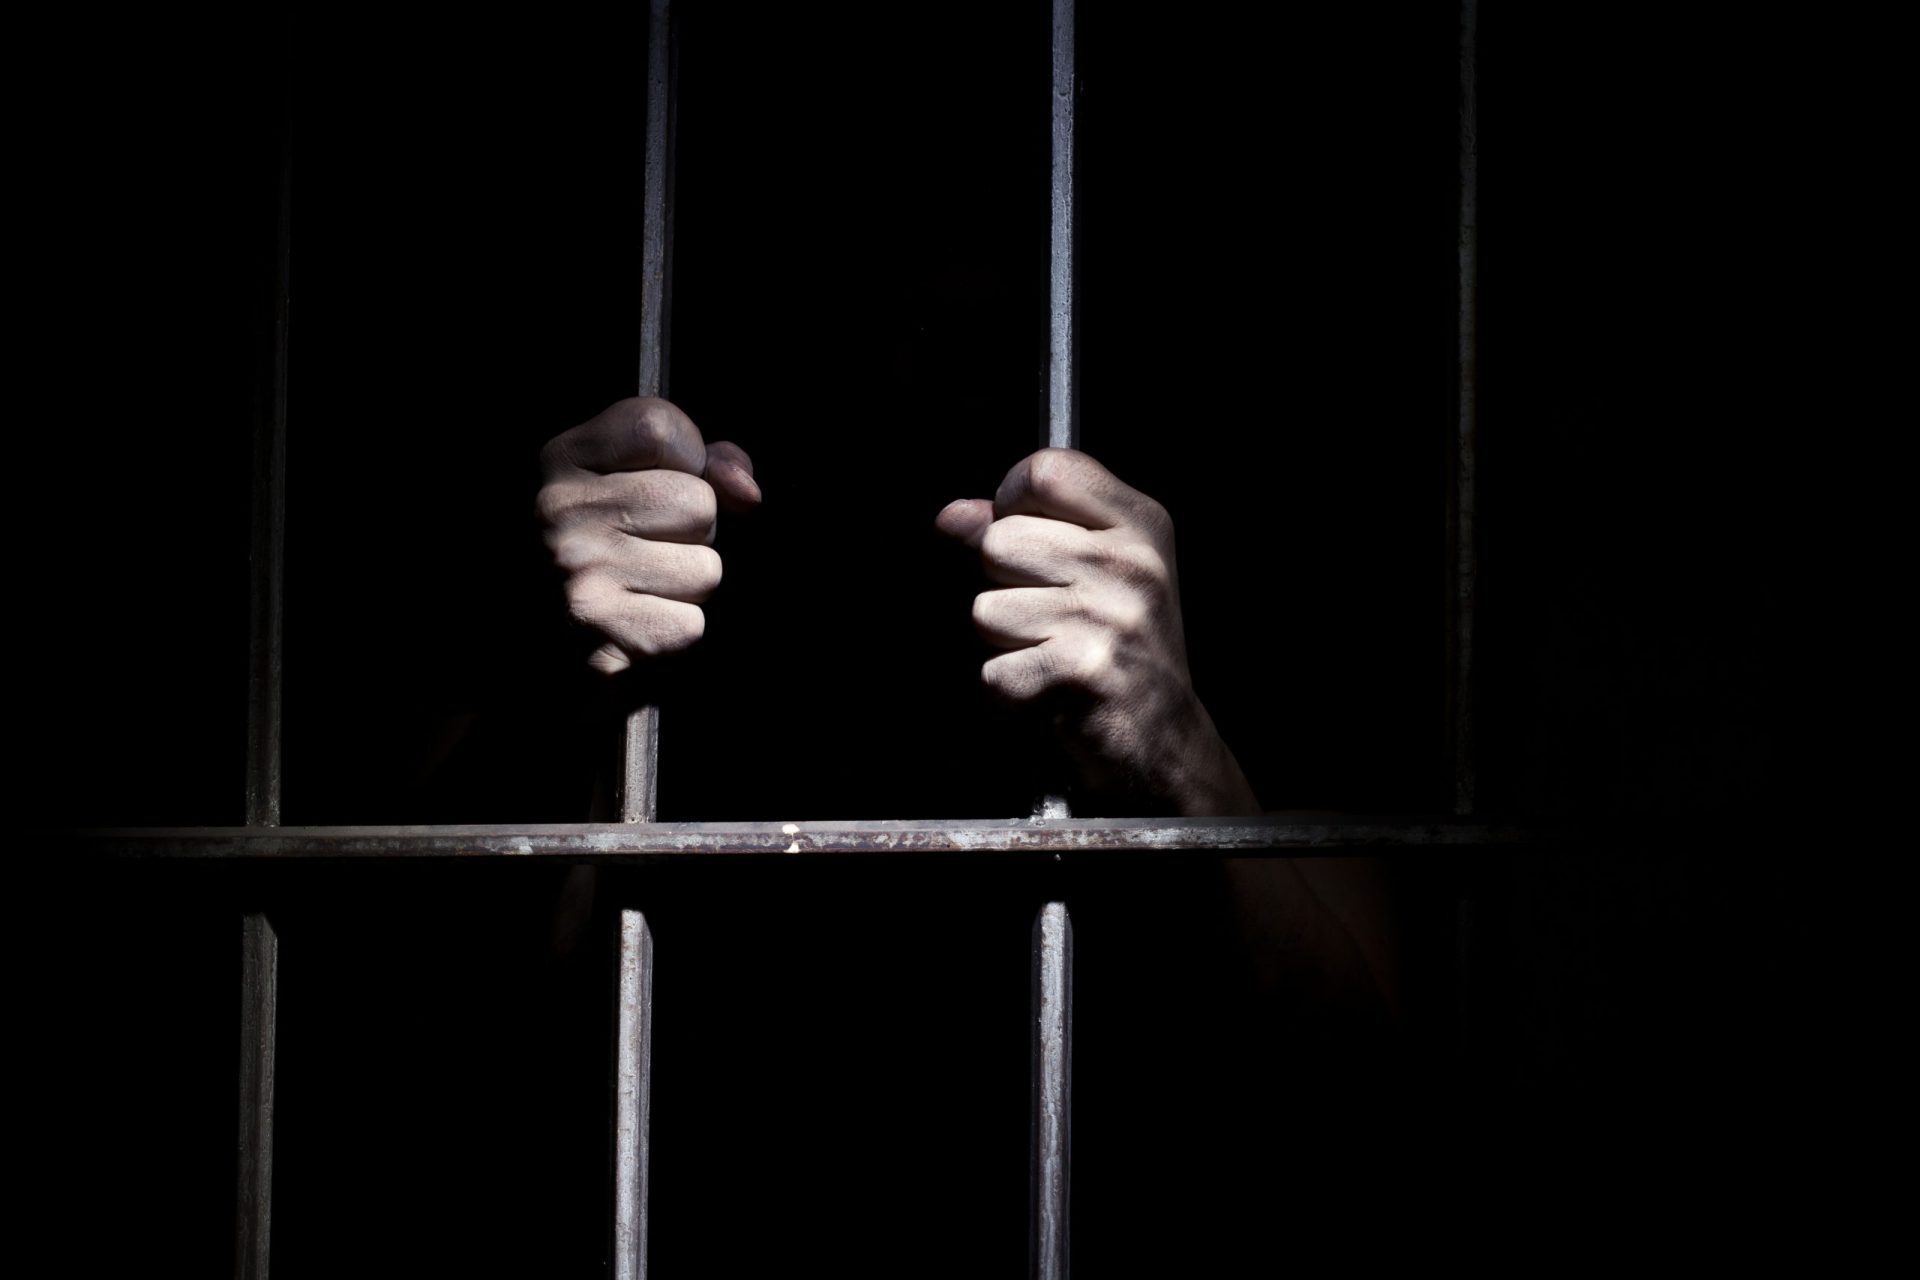 Relatório indica Portugal com elevada taxa de presos